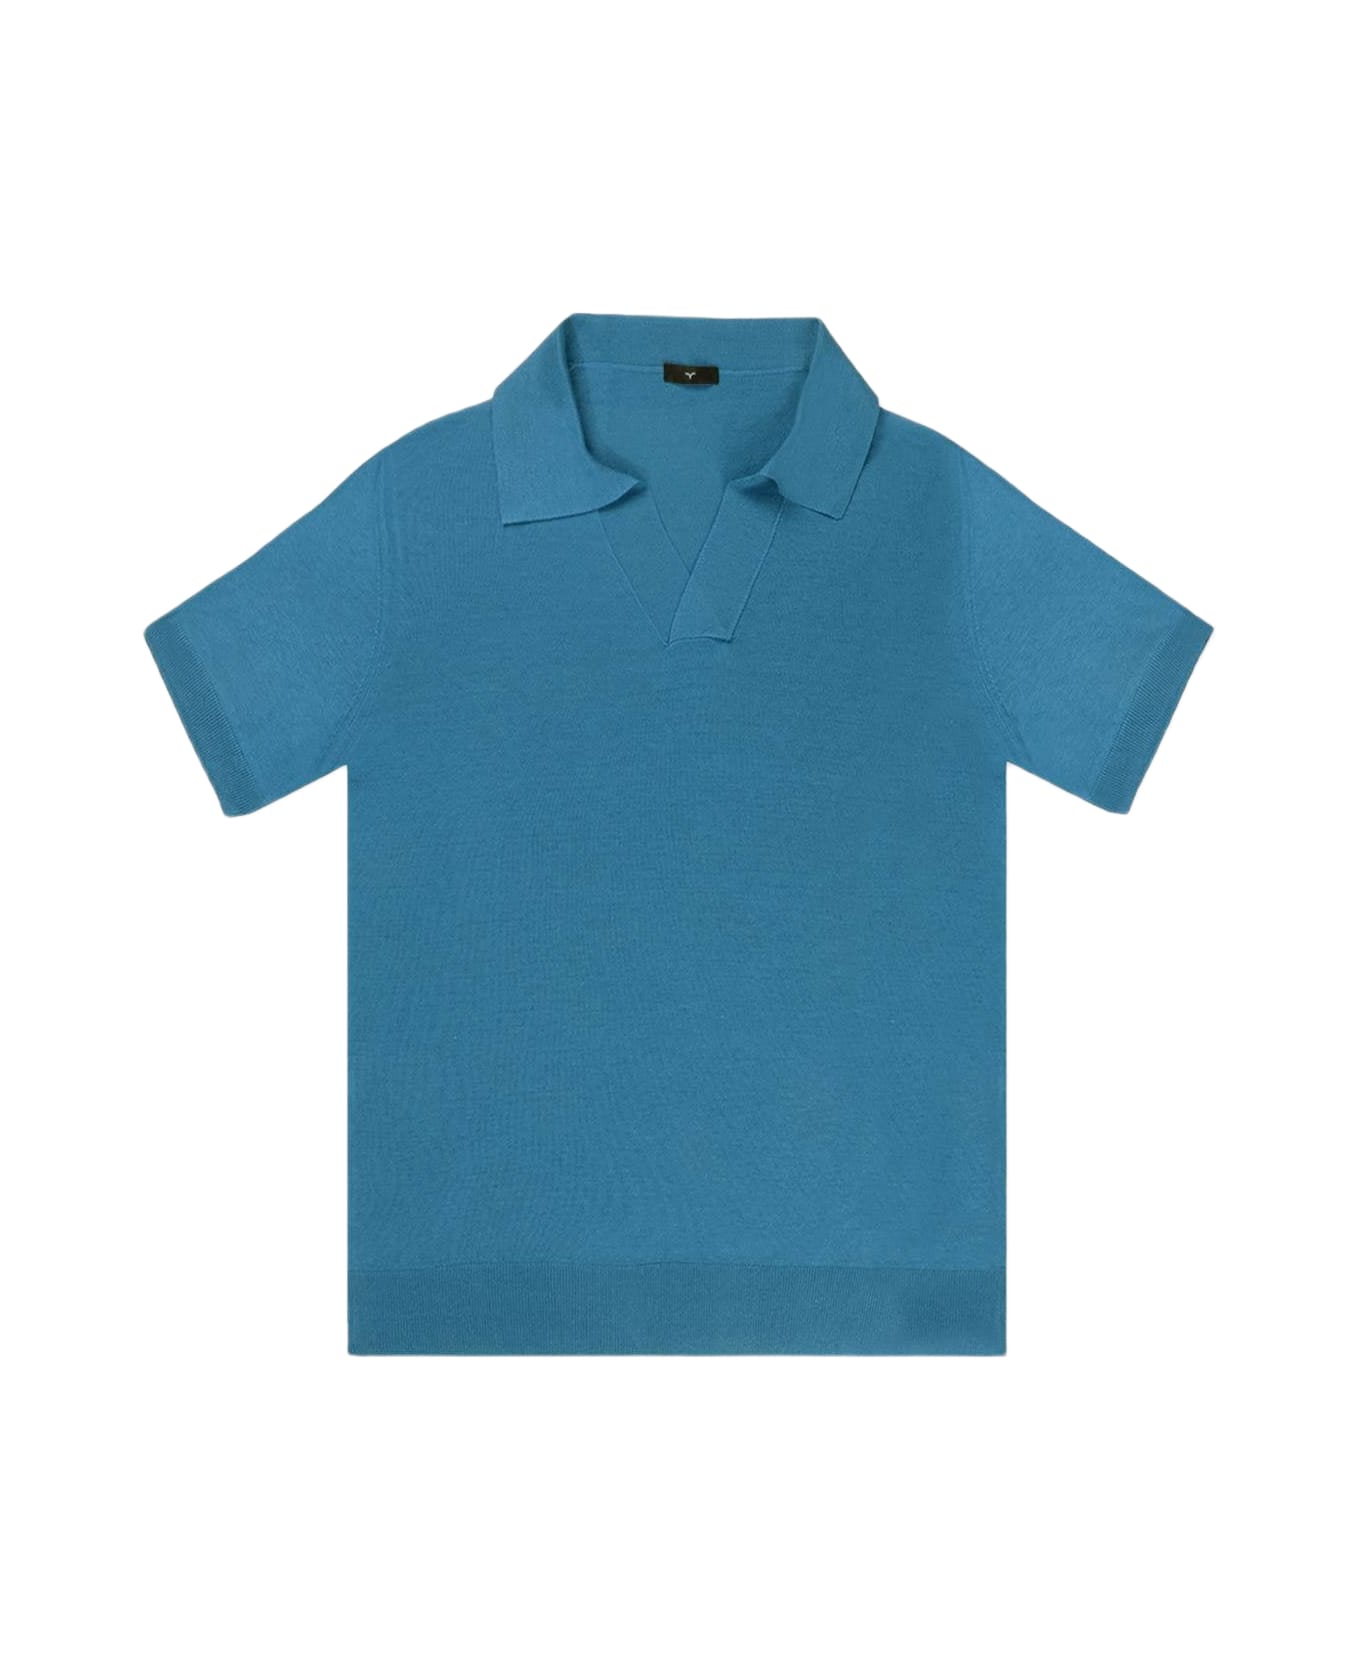 Larusmiani 'harry' Polo Polo Shirt - Teal